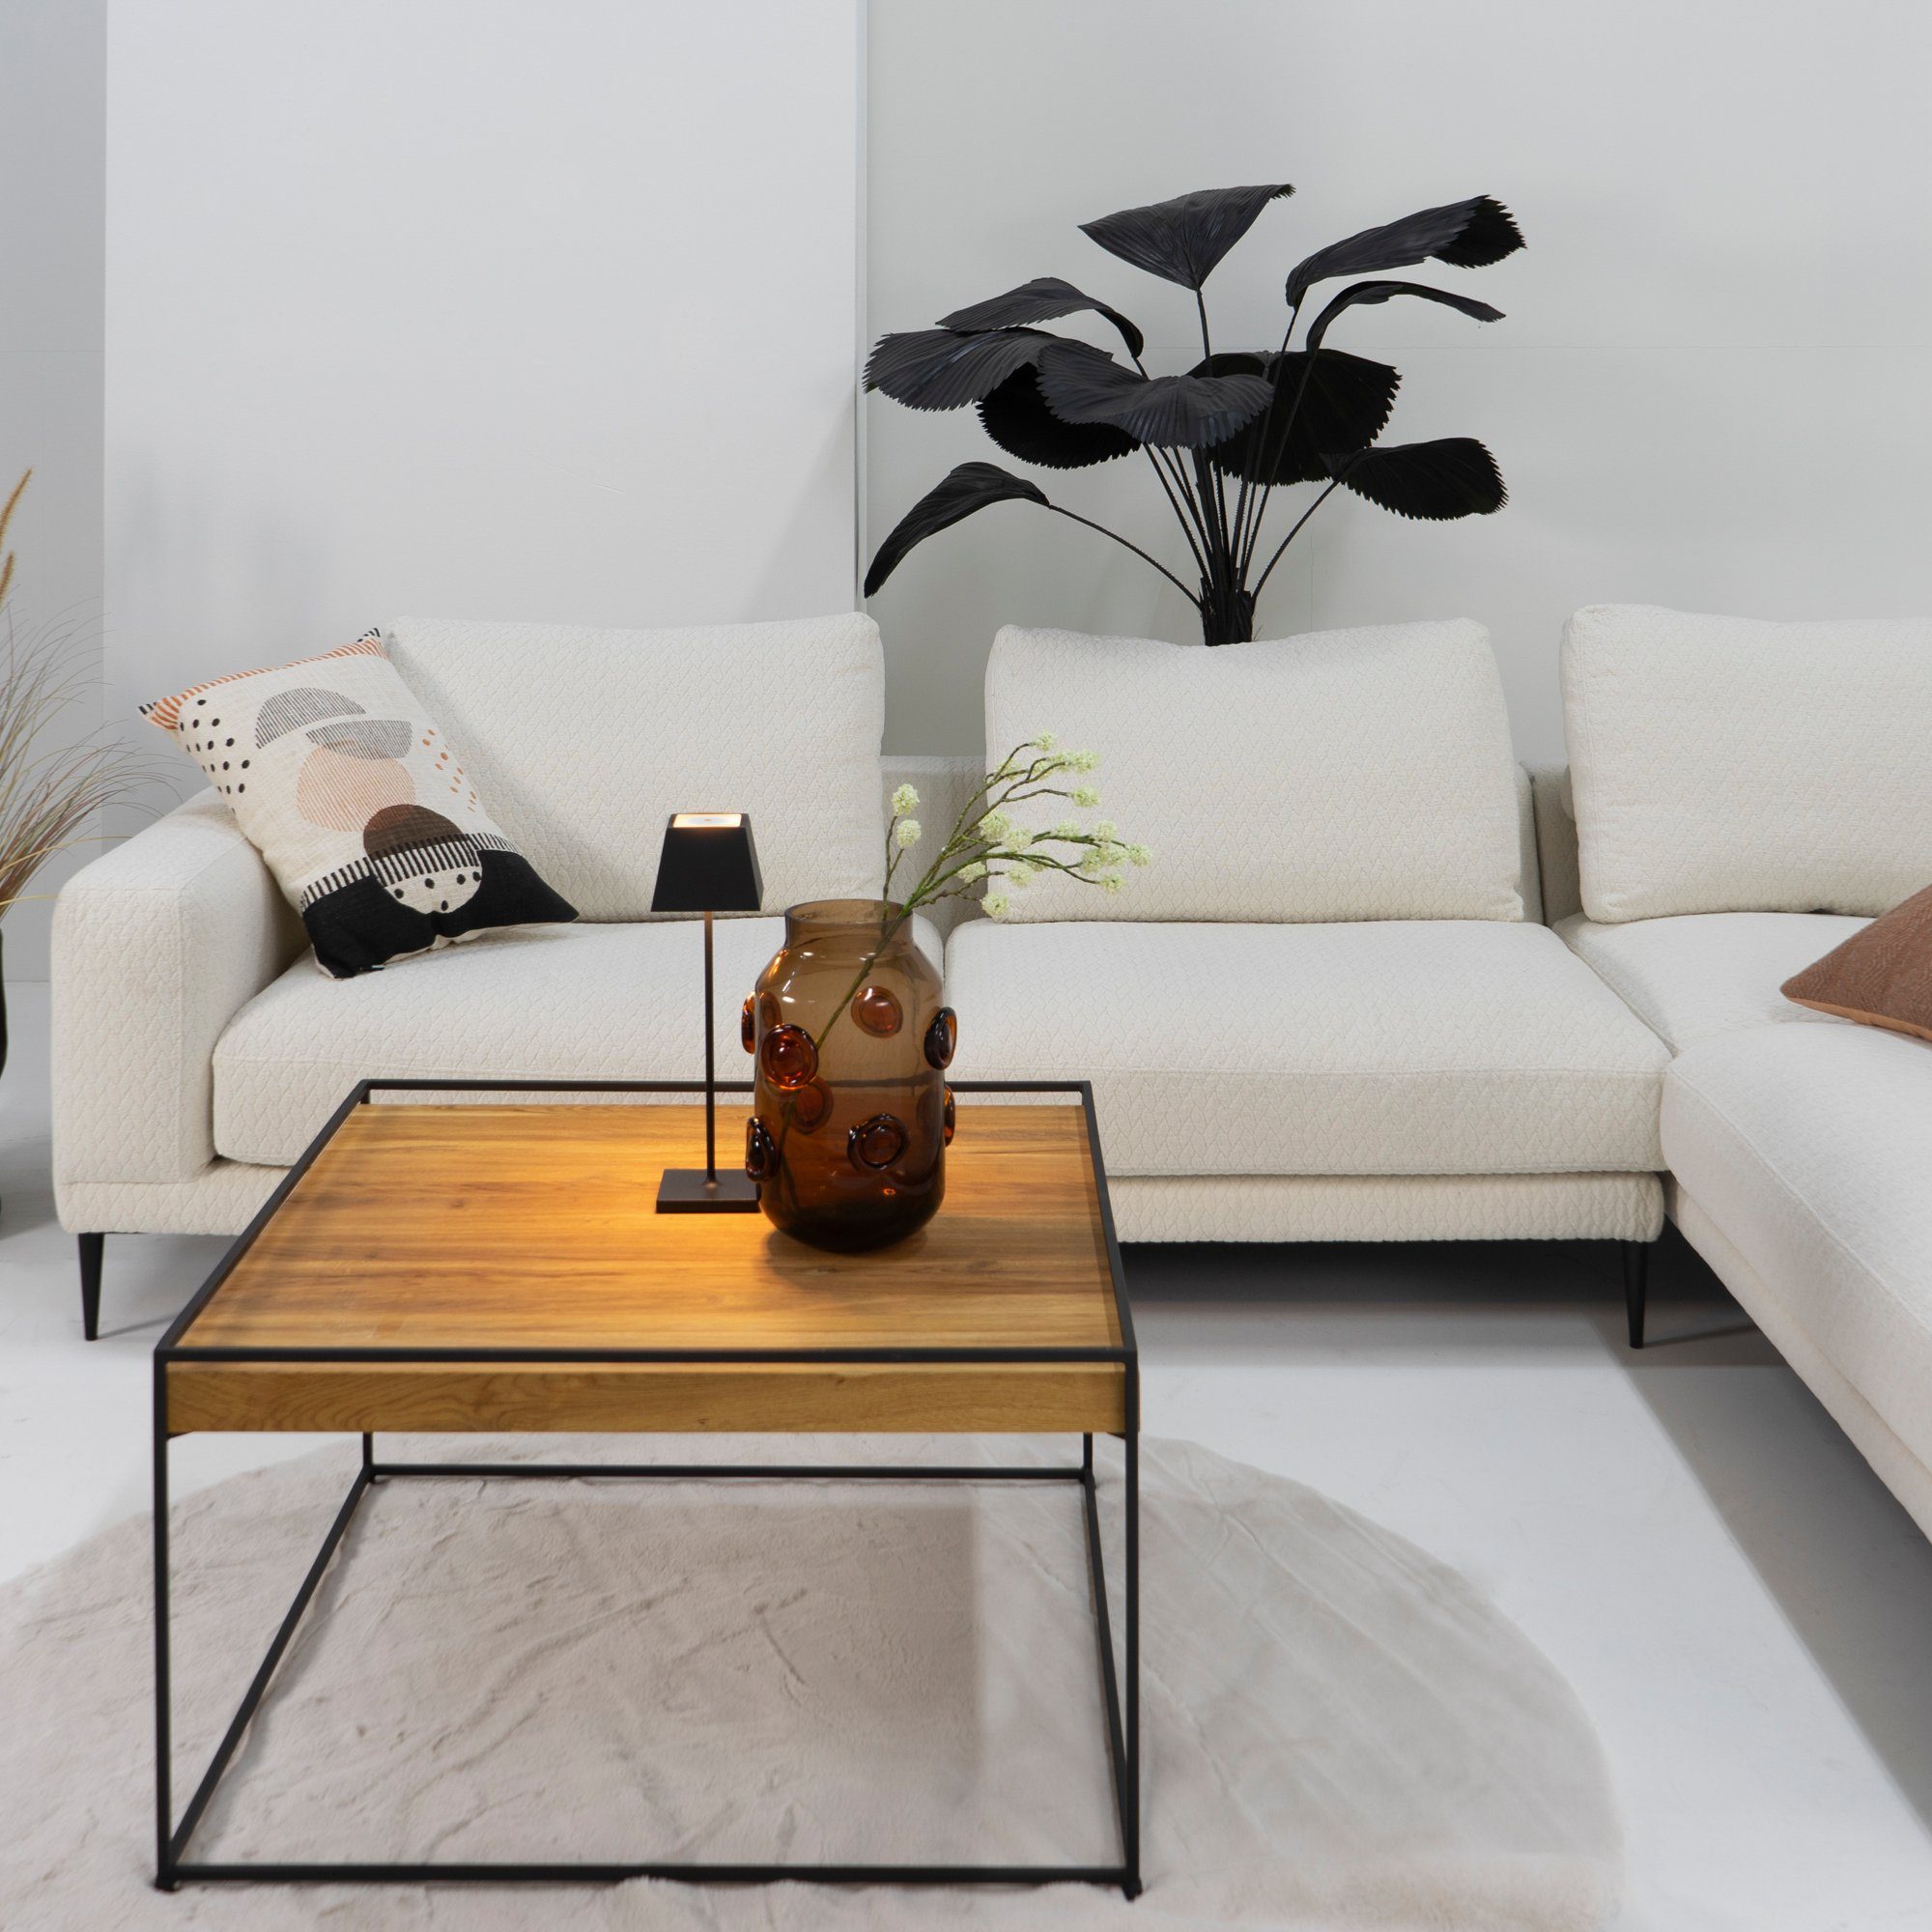 Torna Design - Beistelltisch Schwarz Furniture Torna WOOD 80 THIN 80x46x80cm Beistelltisch